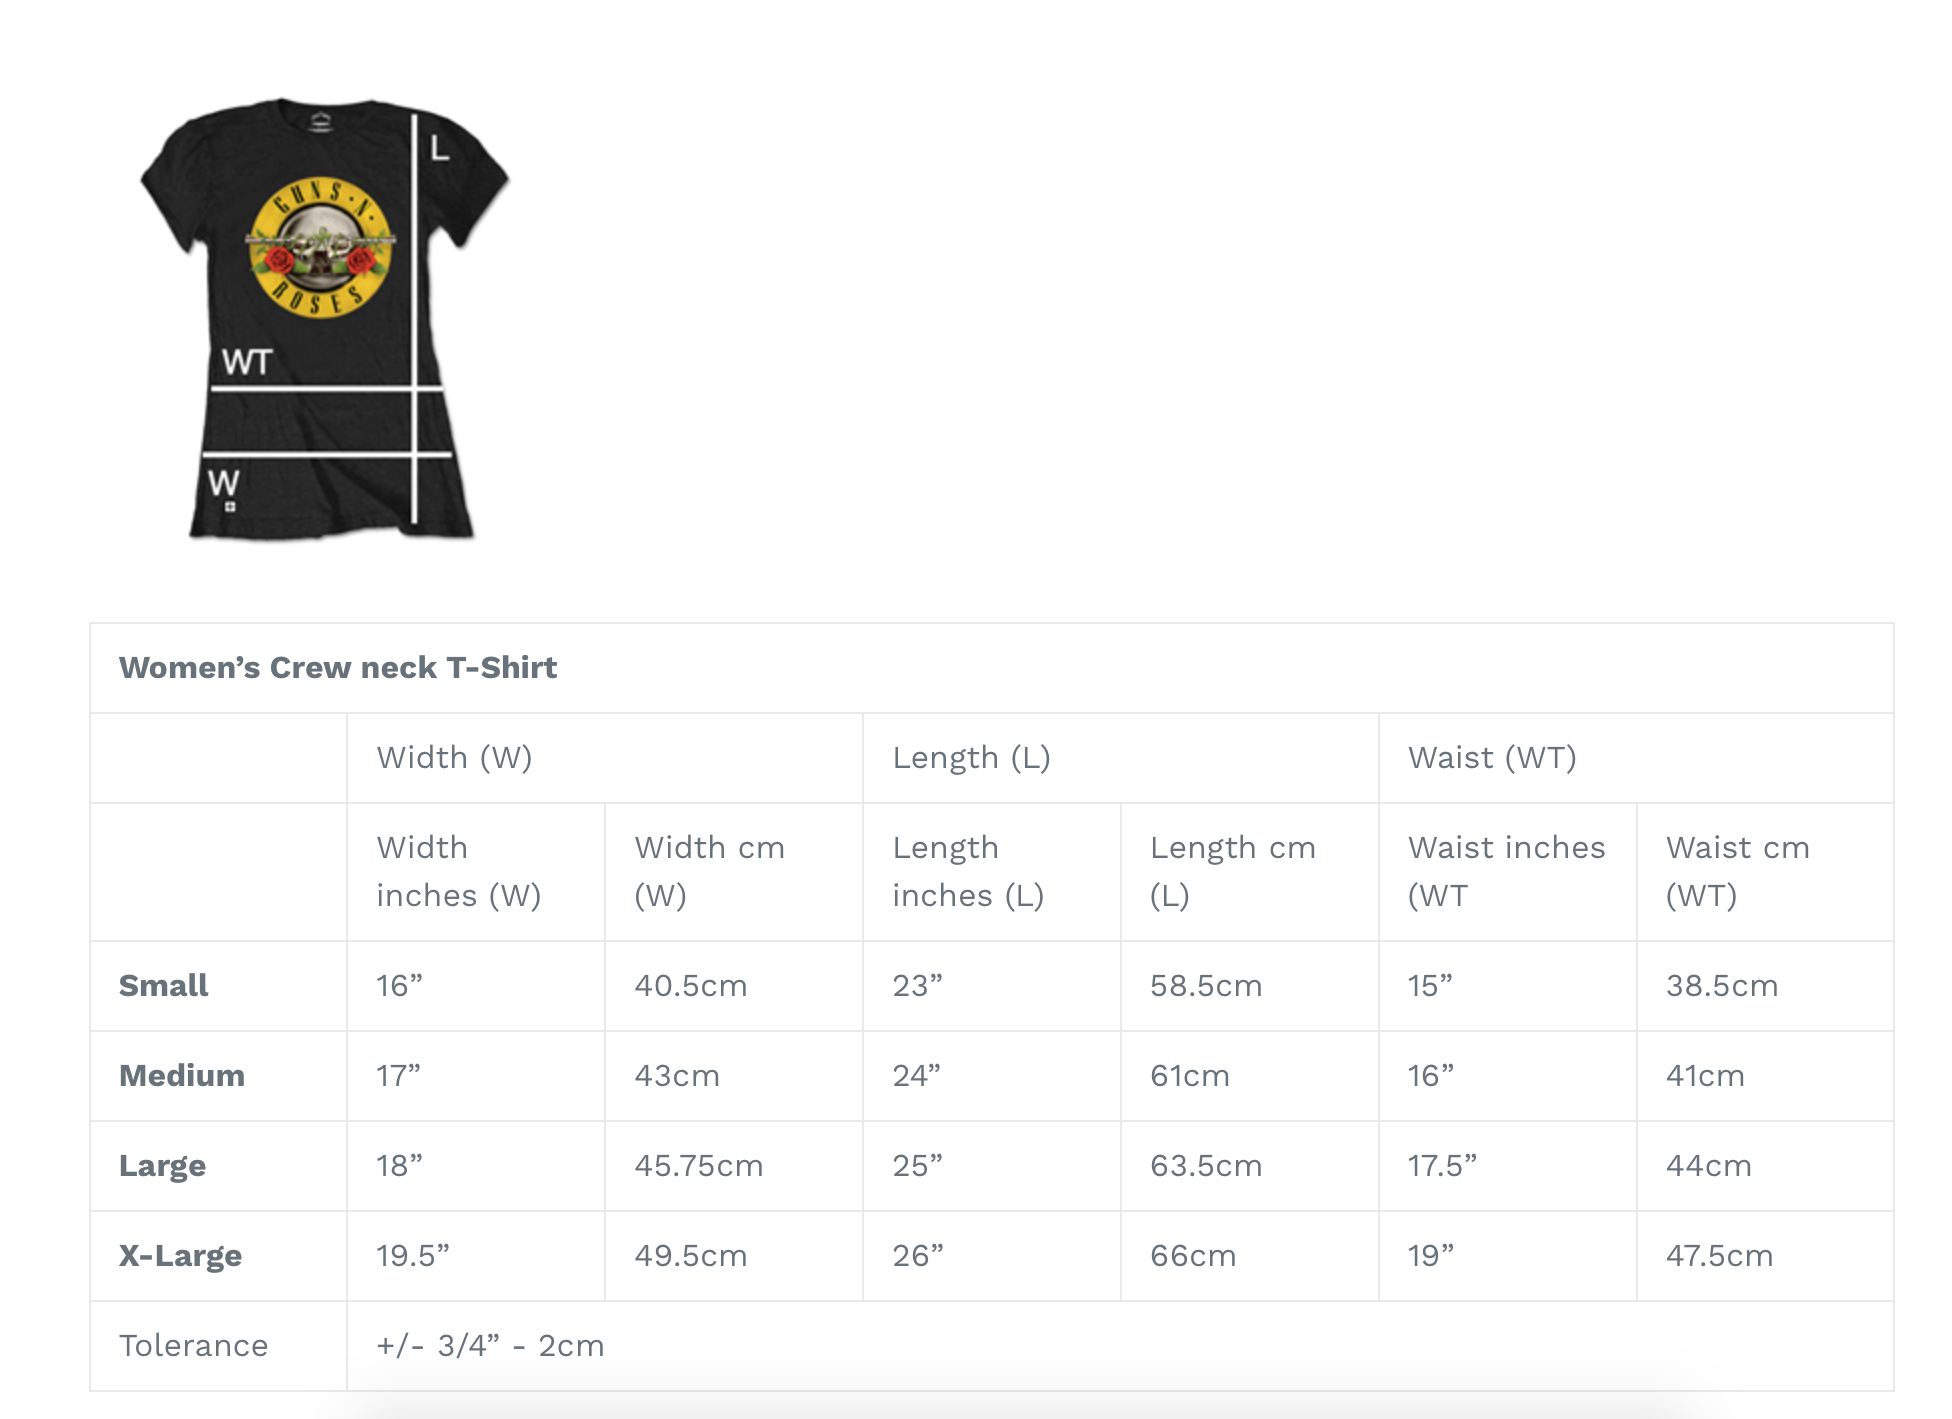 Das Ramones-Damen-T-Shirt – Präsidentensiegel – Lila, offiziell lizenziertes Design